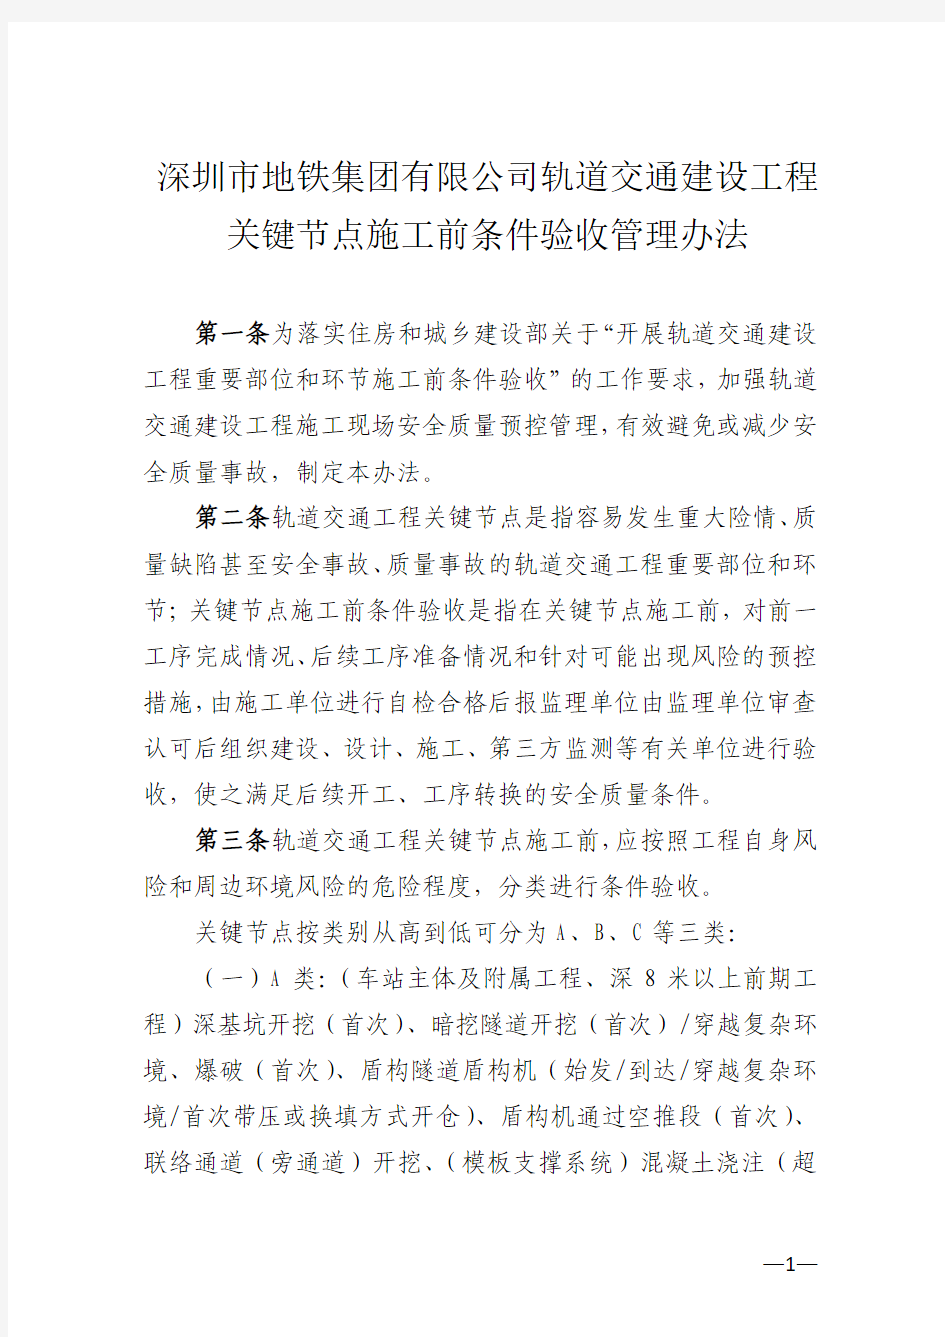 深圳市地铁集团有限公司轨道交通建设工程关键节点施工前条件验收管理办法_33620